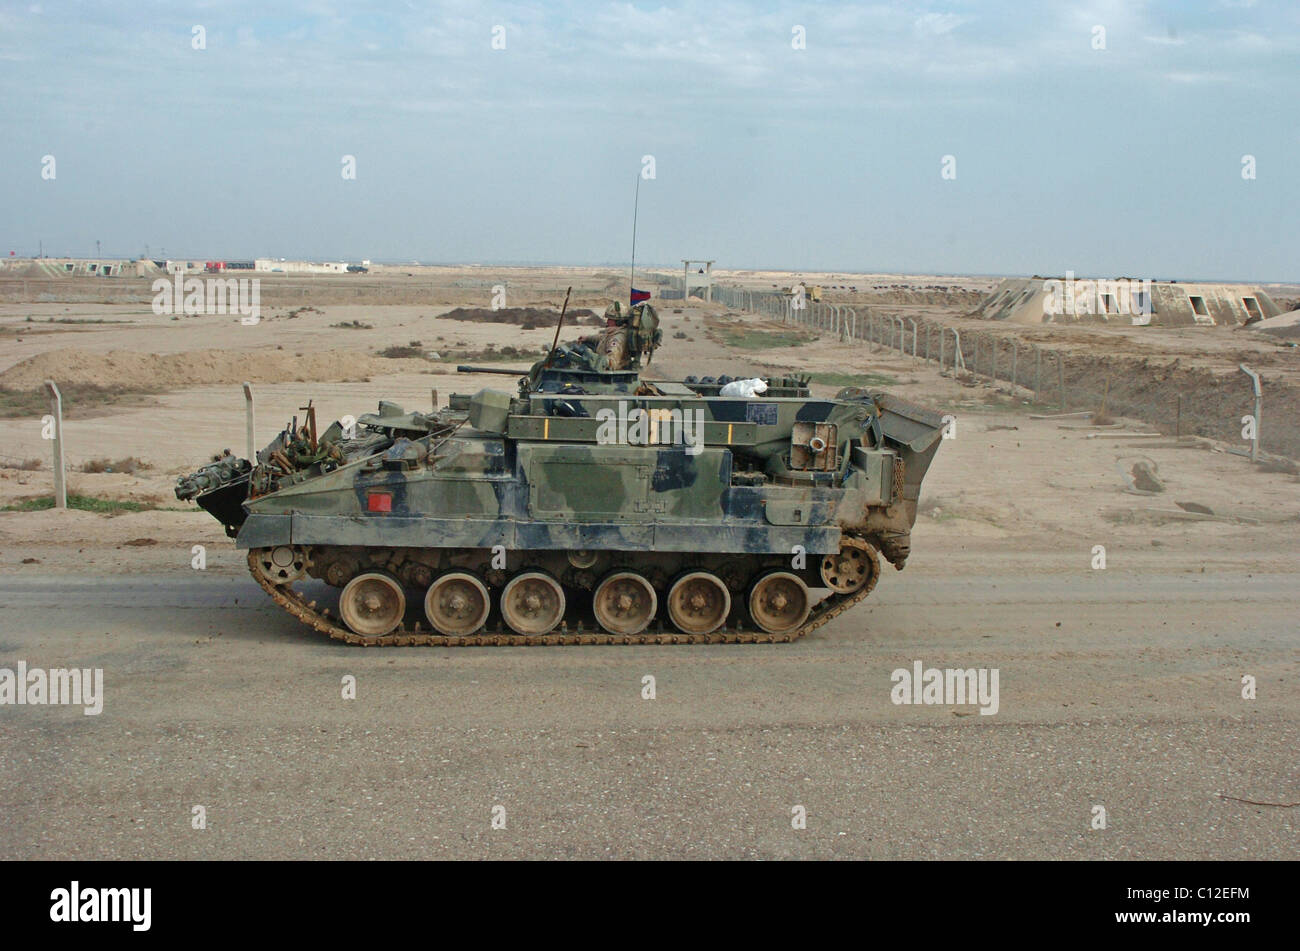 La MCV-80 Warrior vehículo de combate de infantería fue desarrollado para sustituir a la FV 430 serie de vehículos de combate blindados Foto de stock